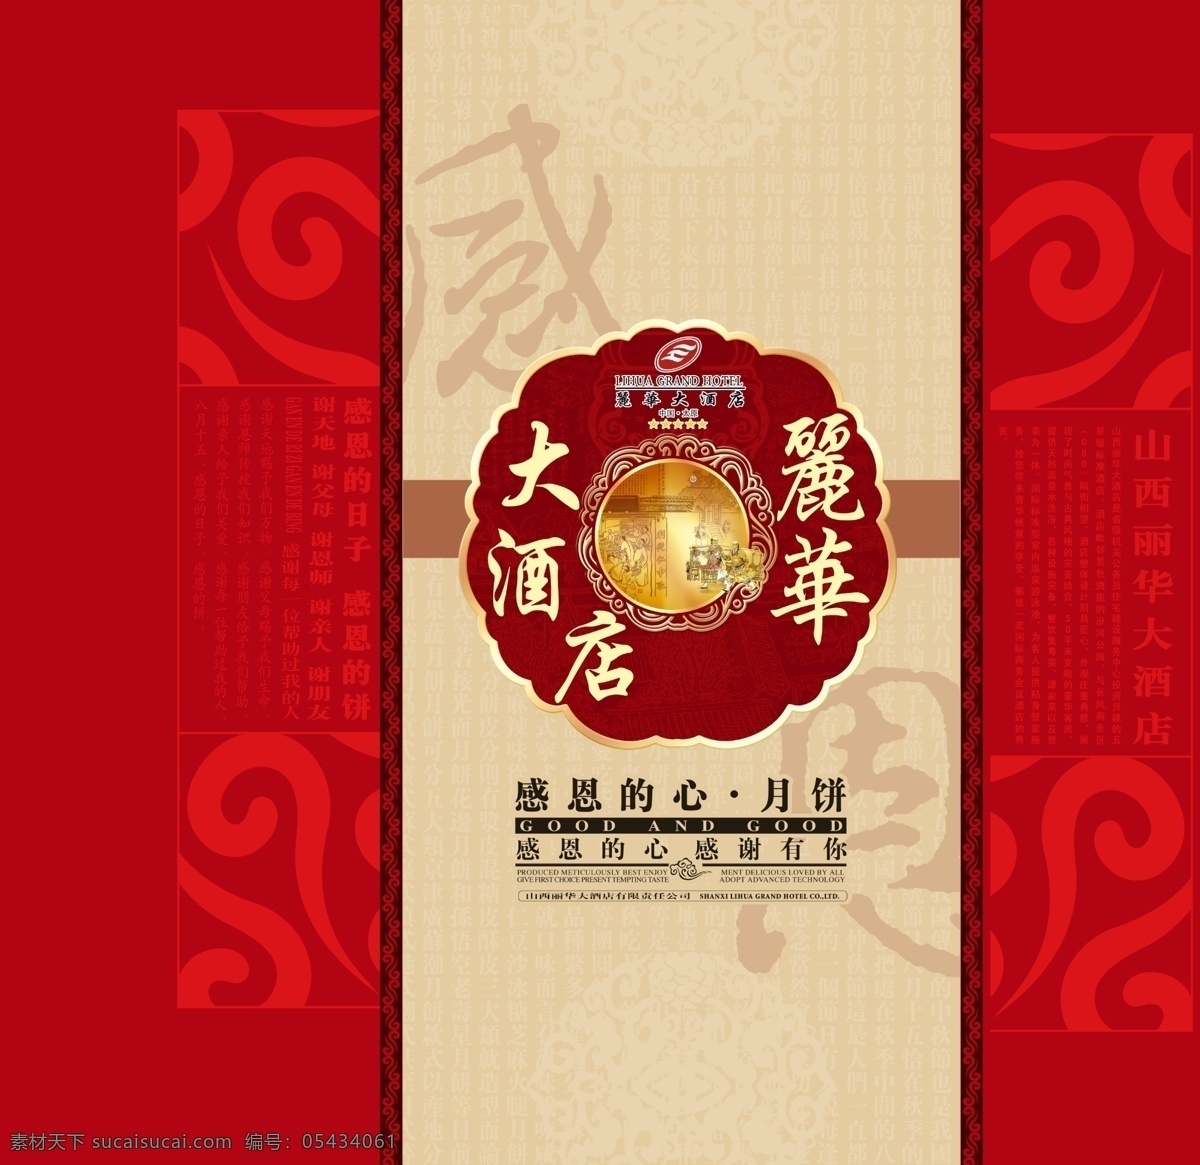 中秋节 月饼包装 包装模板 分层素材 设计素材 psd源文件 红色